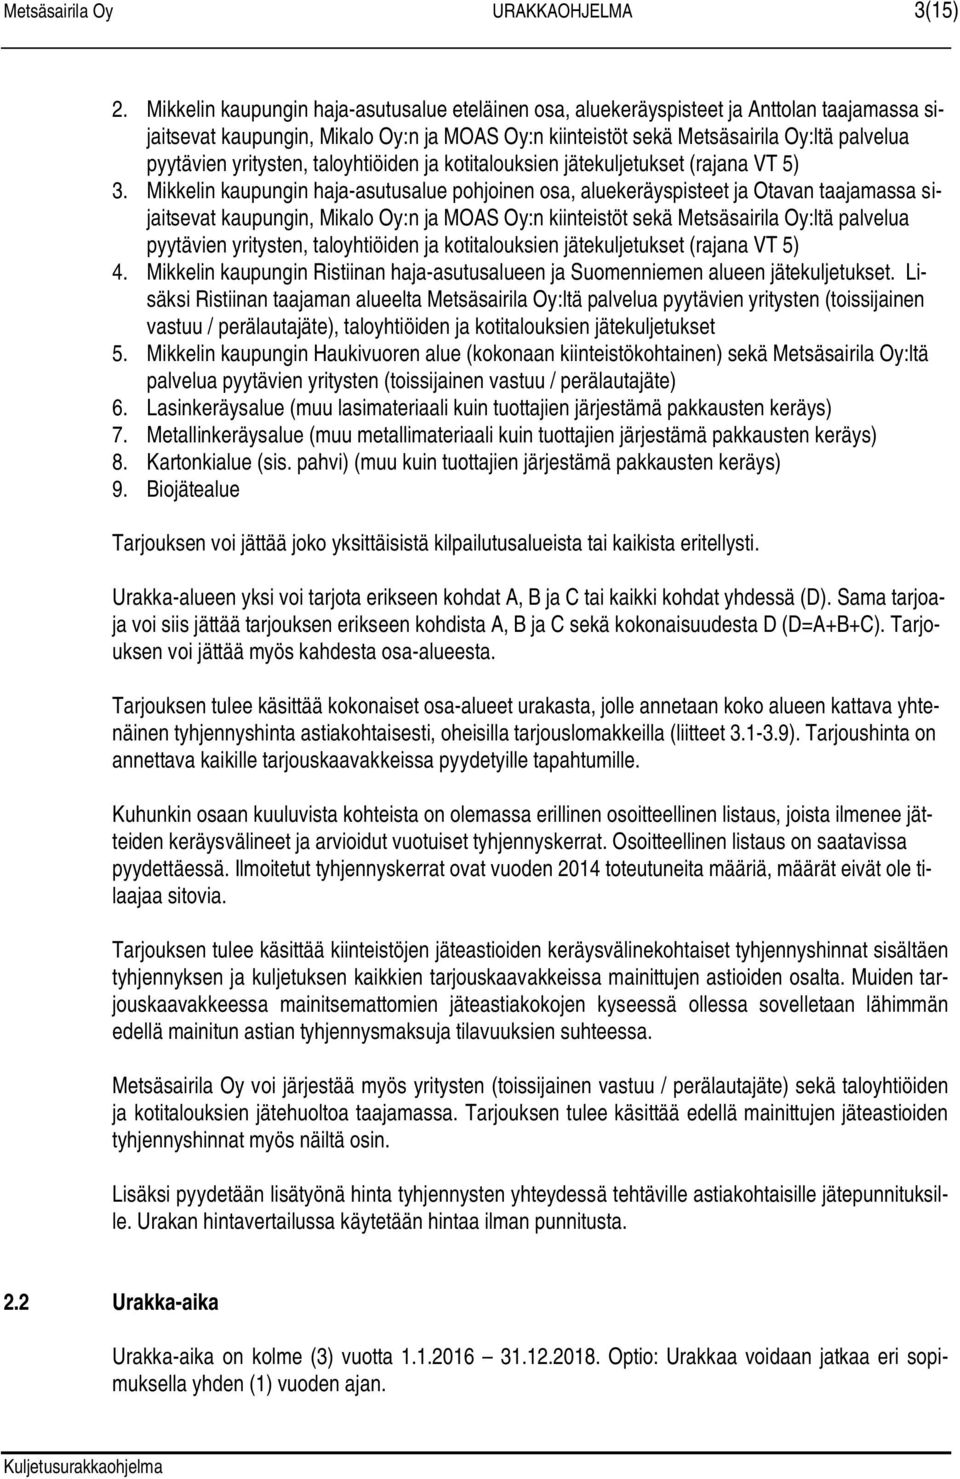 yritysten, taloyhtiöiden ja kotitalouksien jätekuljetukset (rajana VT 5) 3.